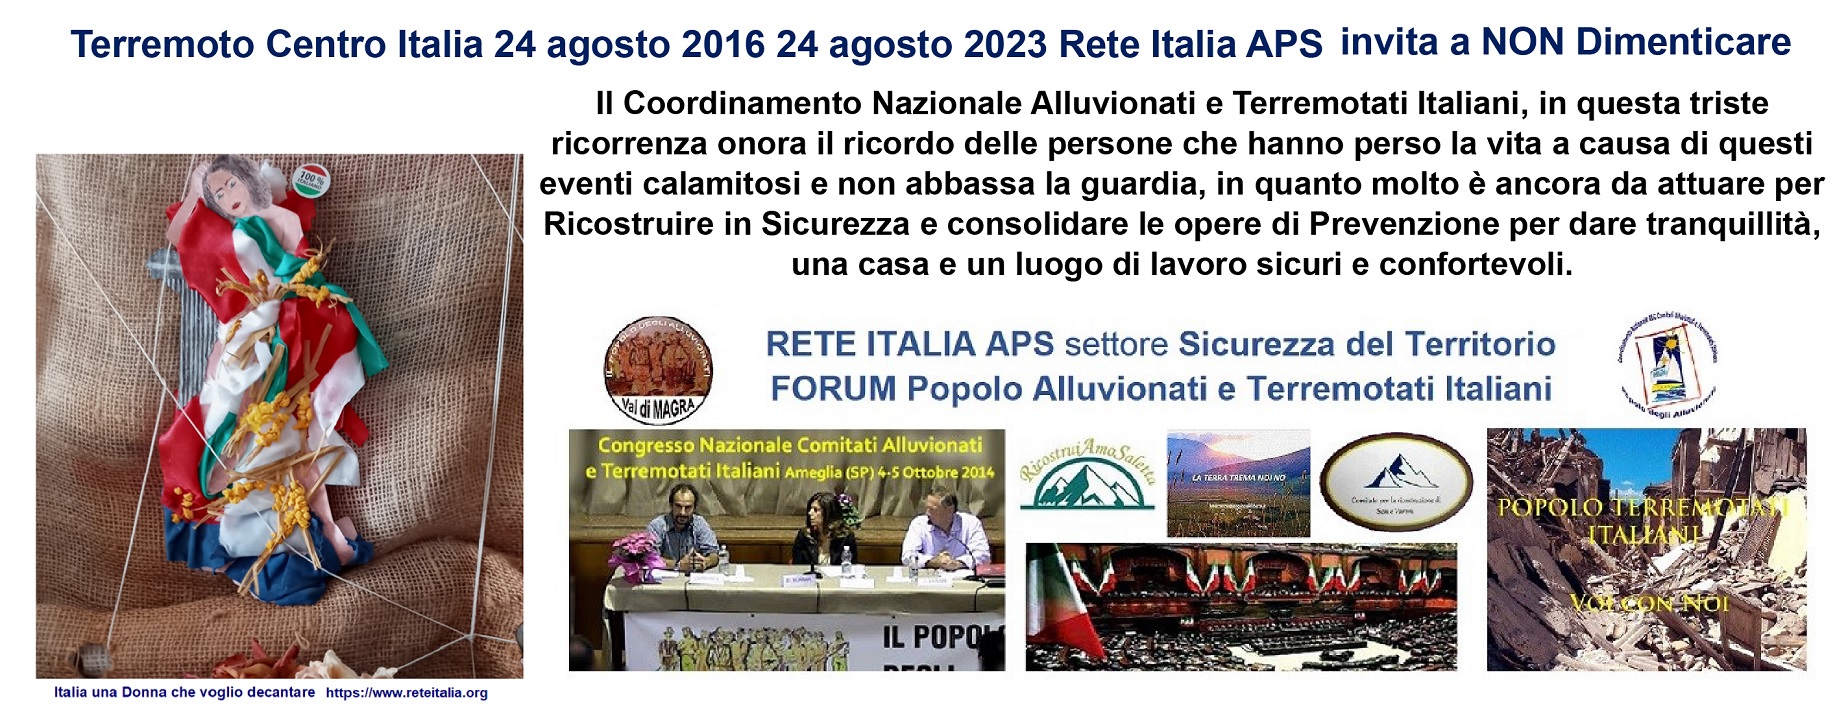 Terremoto Centro Italia 24 agosto 2016 24 agosto 2023 Rete Italia APS invita a NON Dimenticare